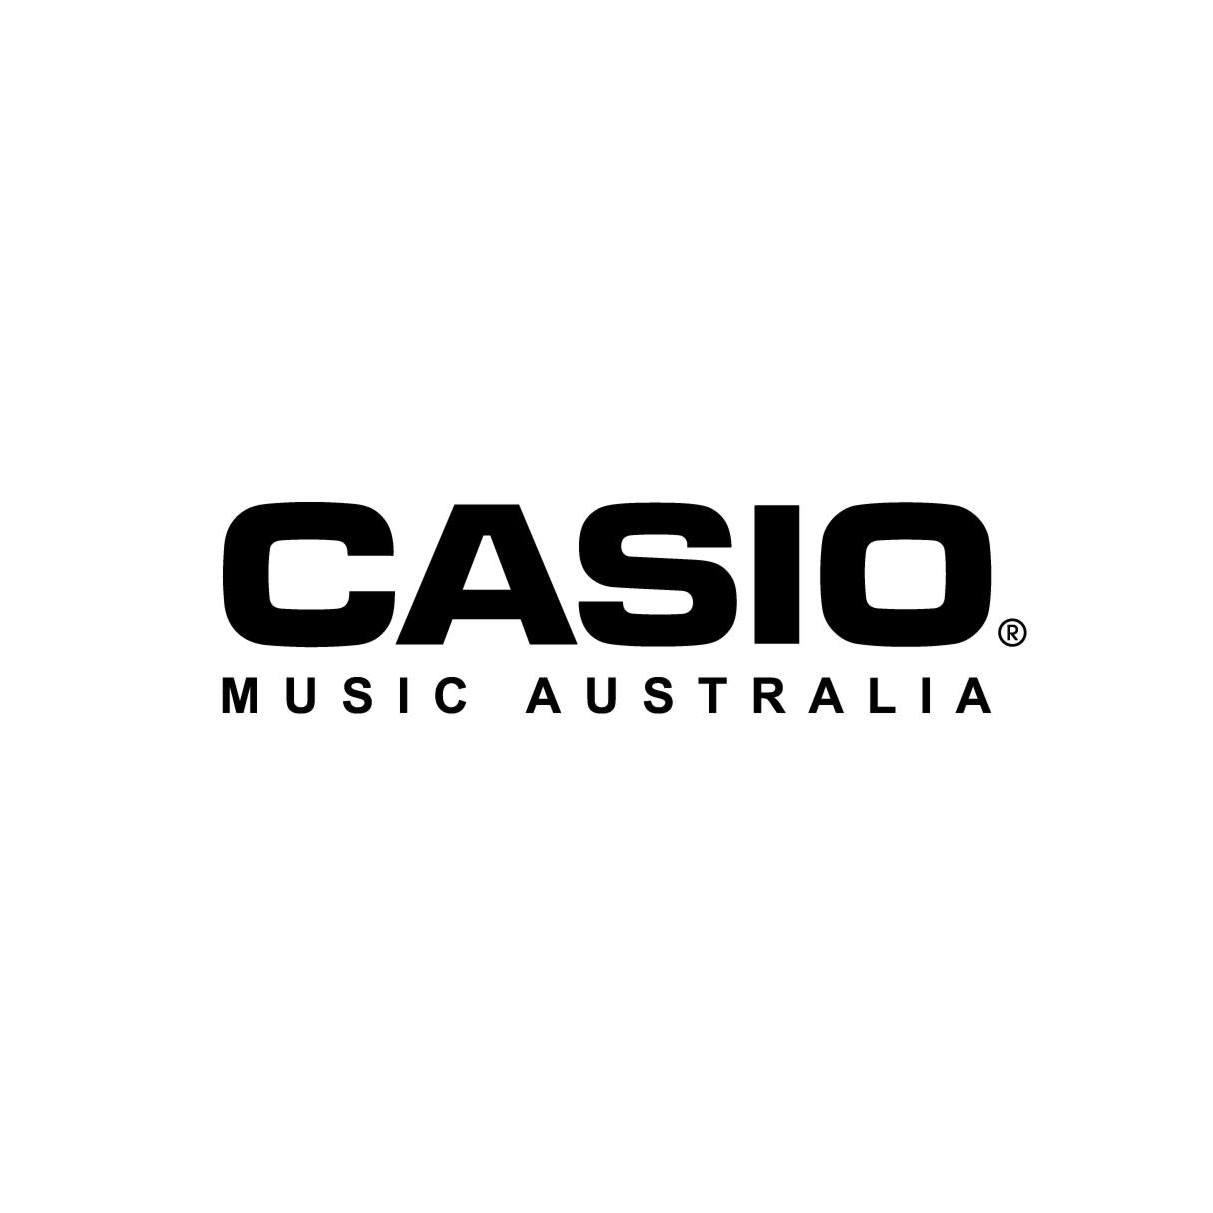 CASIO Music Australia